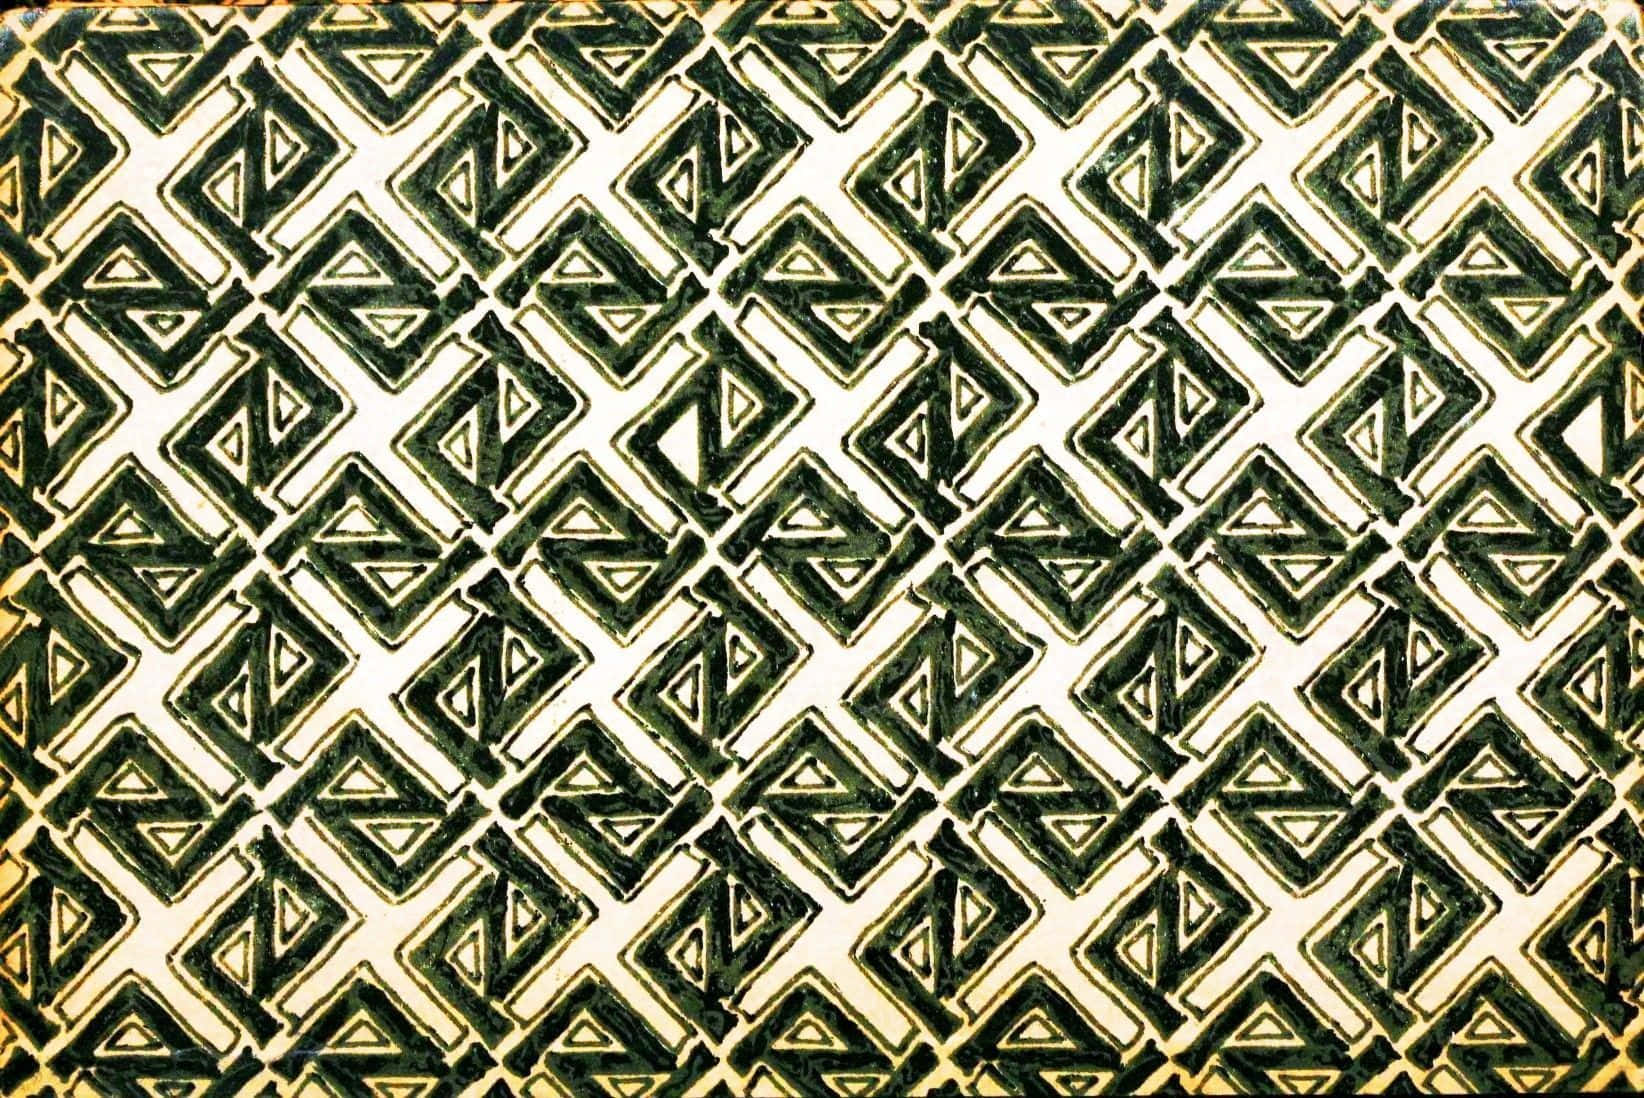 Etgrønt Og Hvidt Geometrisk Mønster På En Træoverflade.